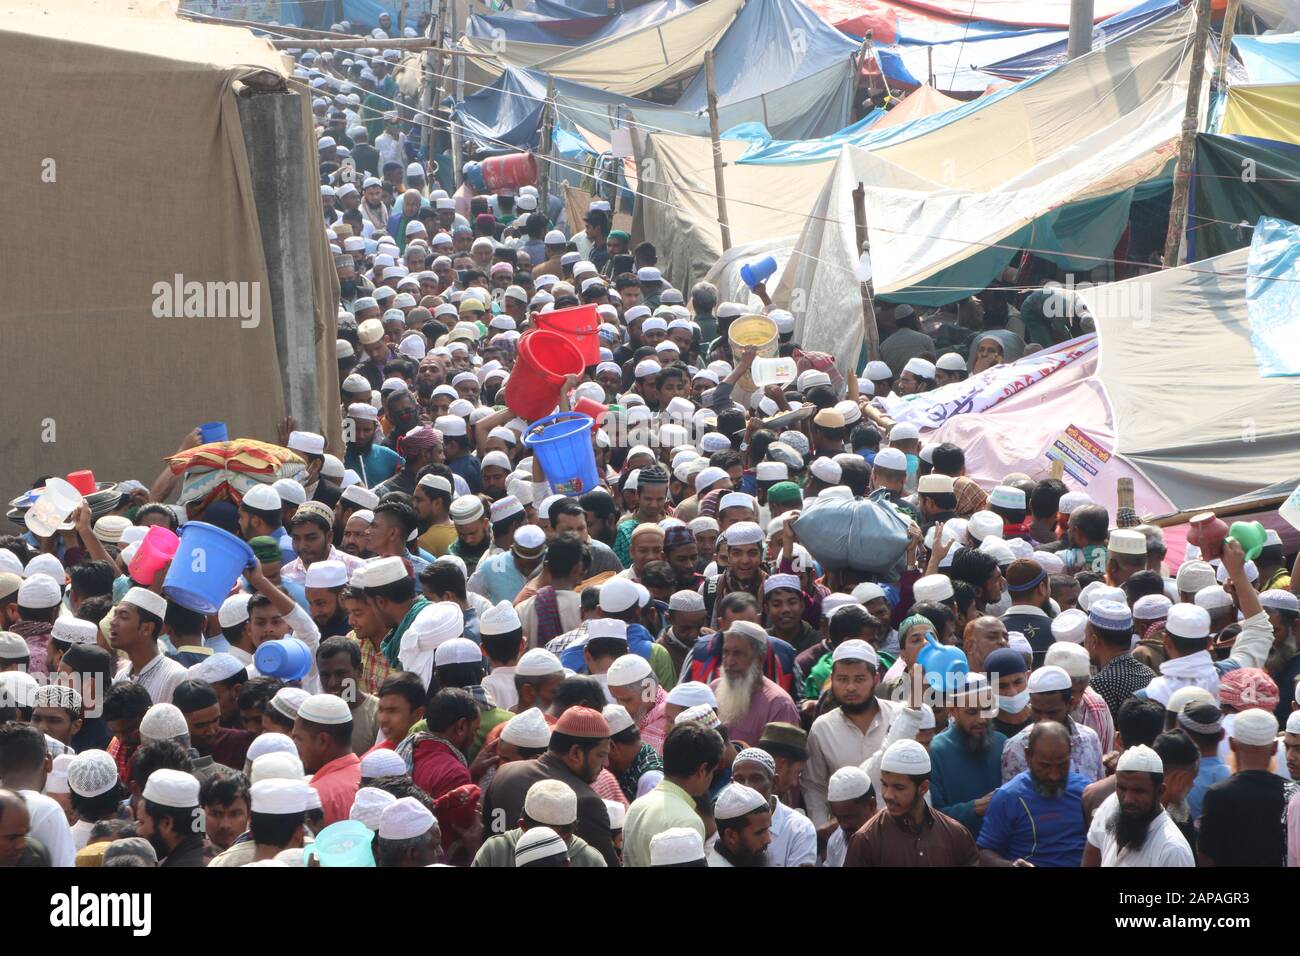 Jan10 2020 - Gazipur, dhaka Bangladesch - die erste Phase der Bishwa Ijtema, der zweitgrößten Gemeinde der Muslime, wurde heute als du abgeschlossen Stockfoto